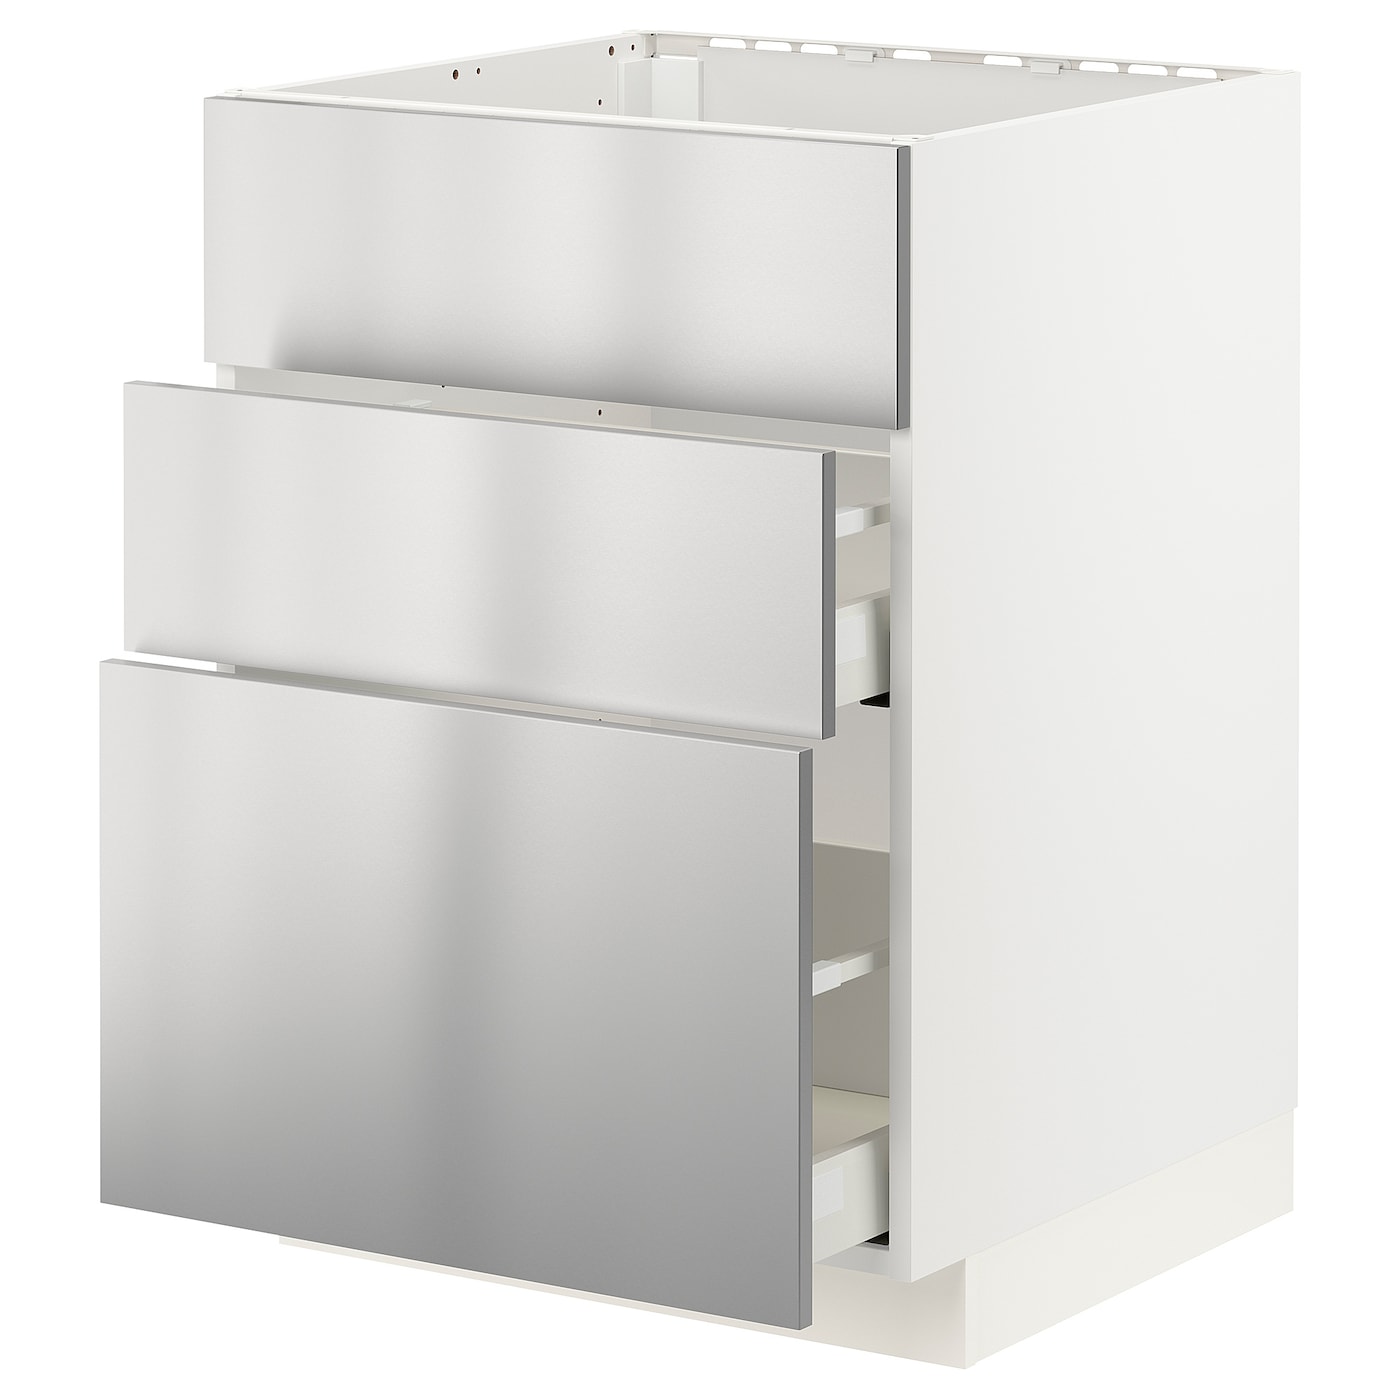 Напольный кухонный шкаф  - IKEA METOD MAXIMERA, 88x61,6x60см, белый/светло-серый, МЕТОД МАКСИМЕРА ИКЕА